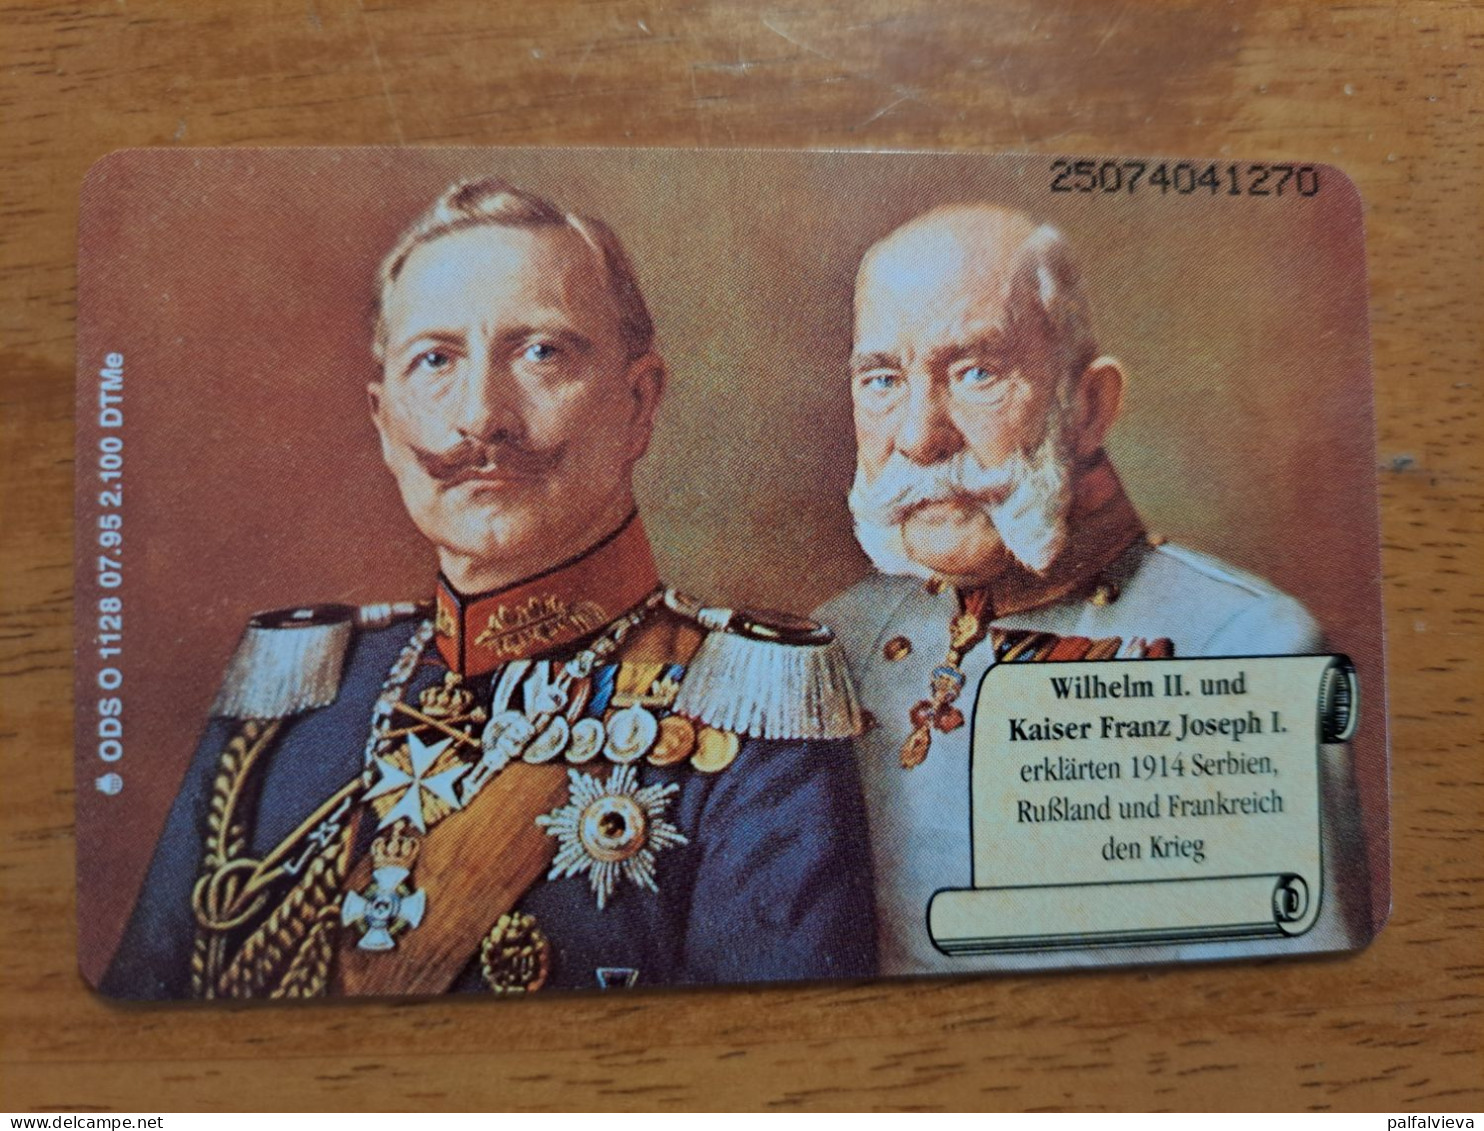 Phonecard Germany O 1128 07.95. Deutschen Kaiser & Könige 2.100 Ex. MINT IN FOLDER! - O-Series: Kundenserie Vom Sammlerservice Ausgeschlossen